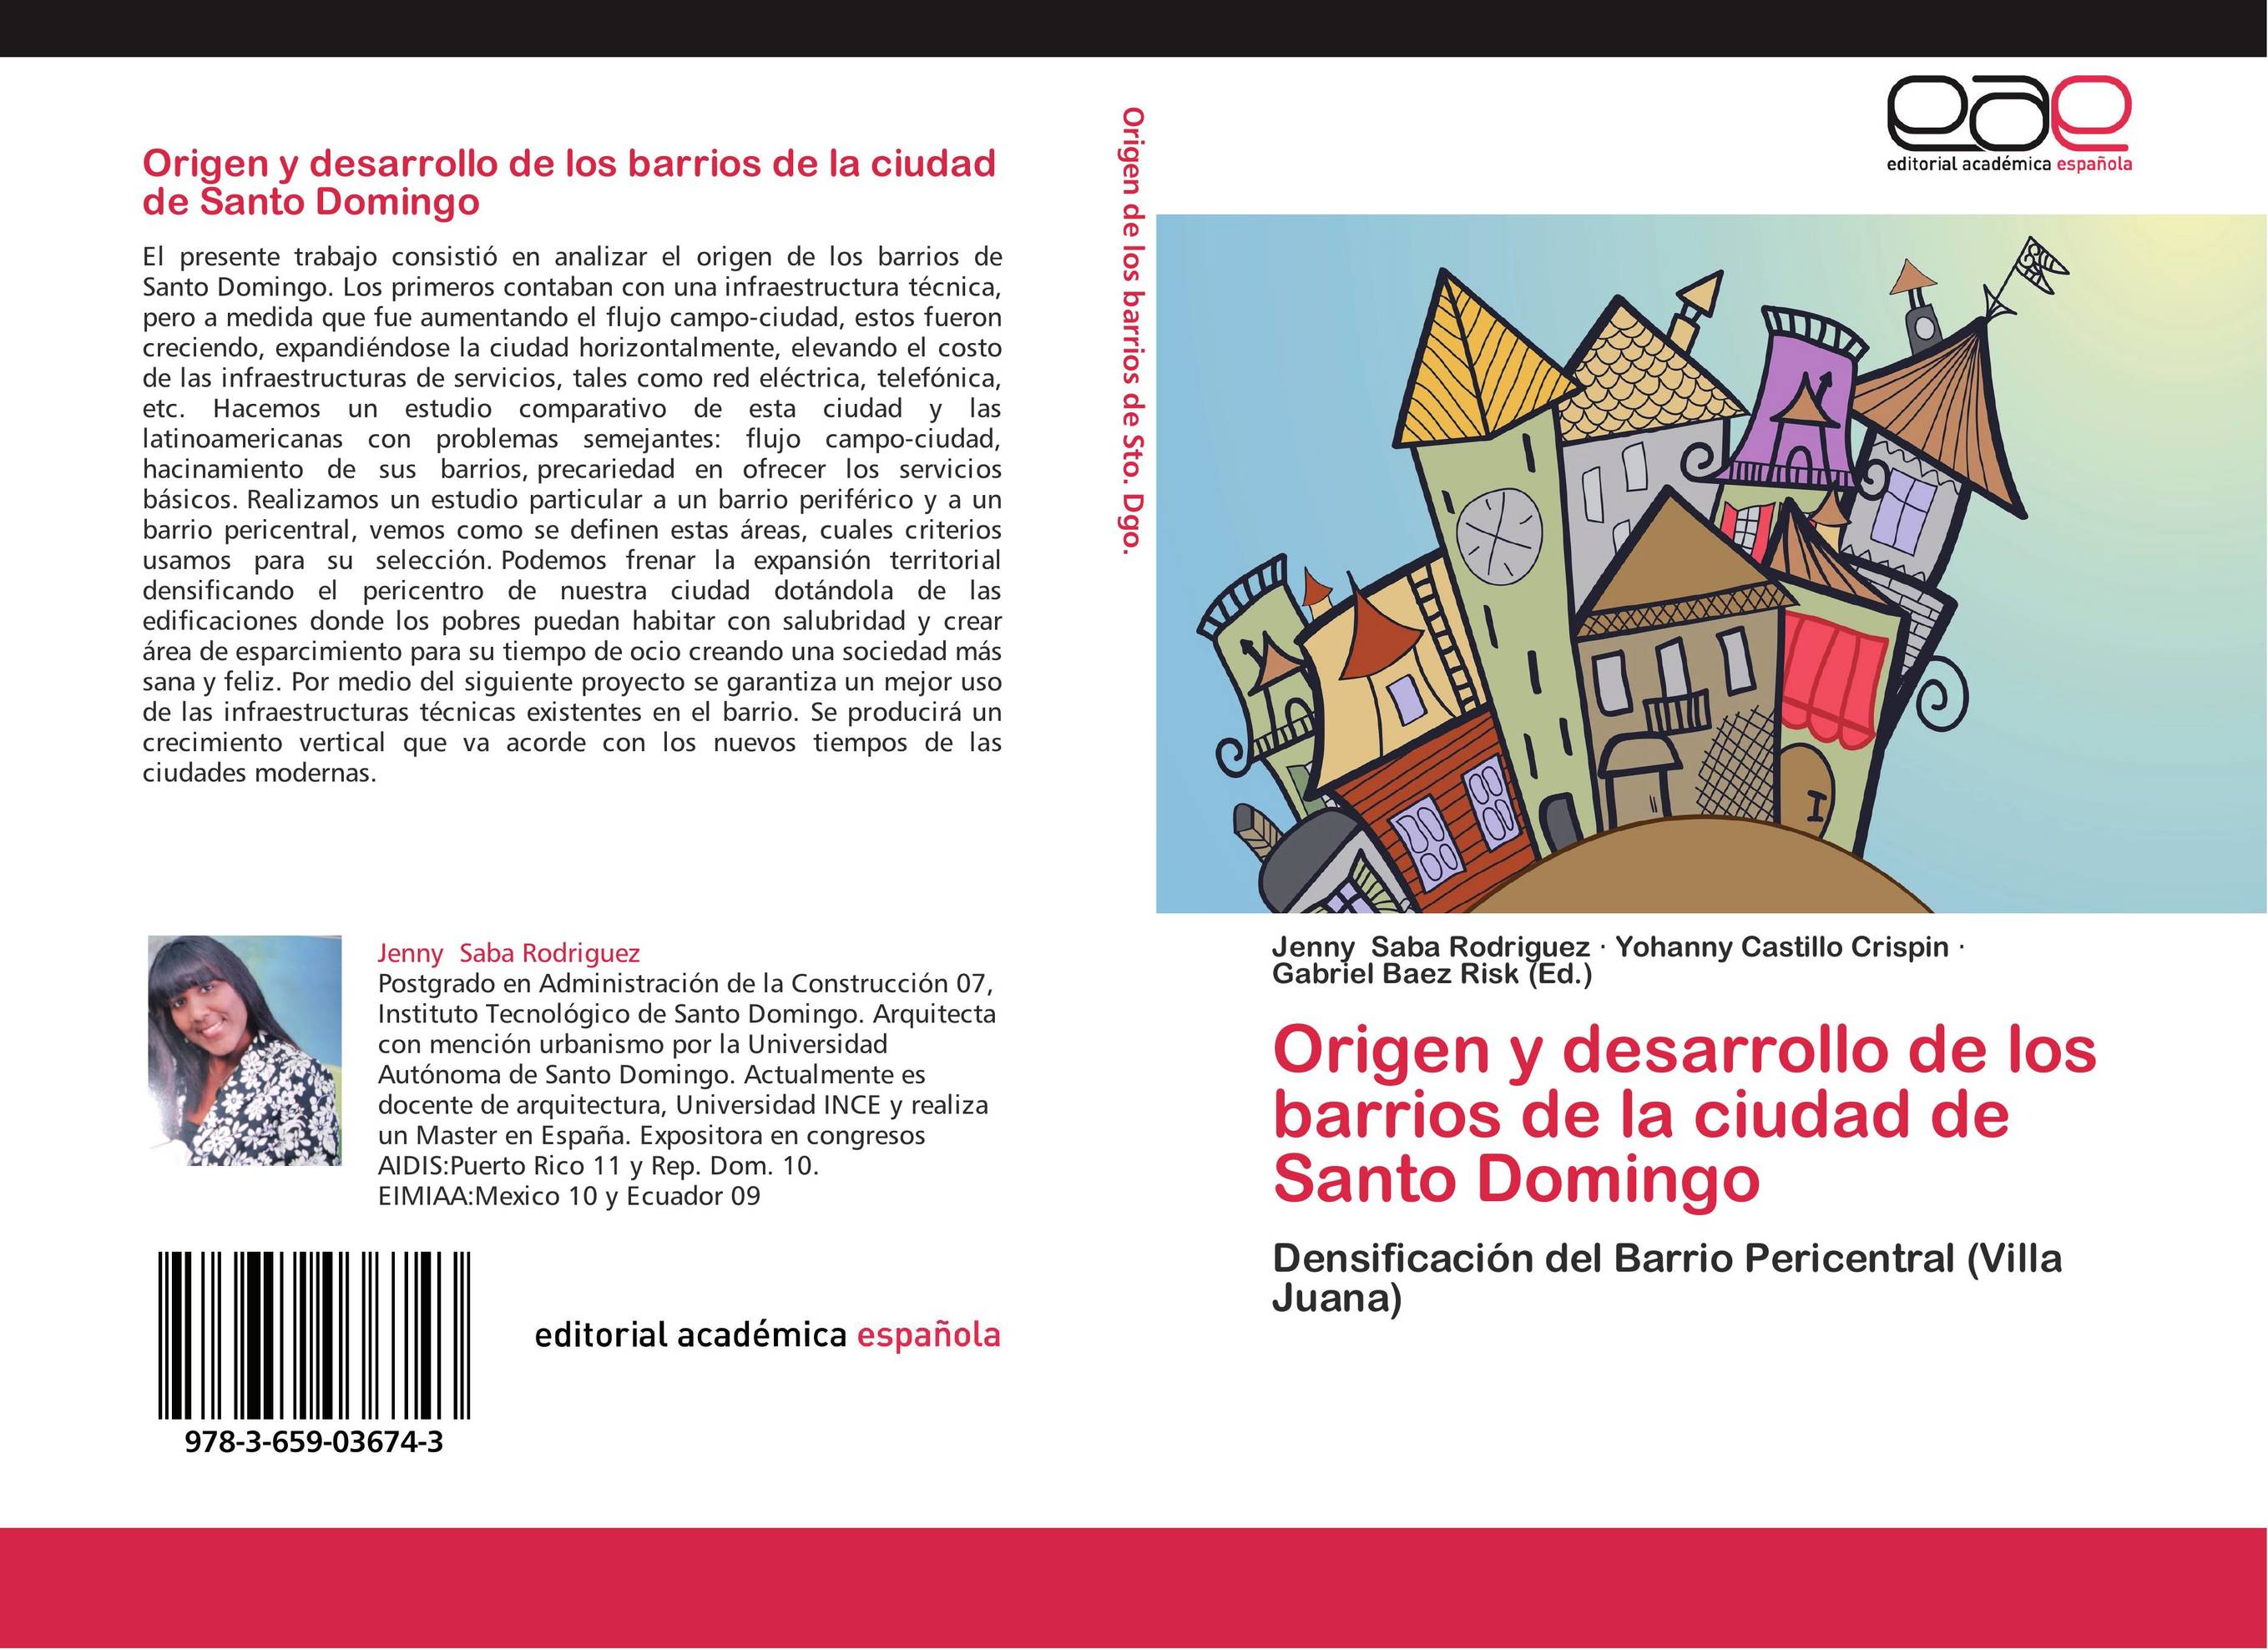 Origen y desarrollo de los barrios de la ciudad de Santo Domingo